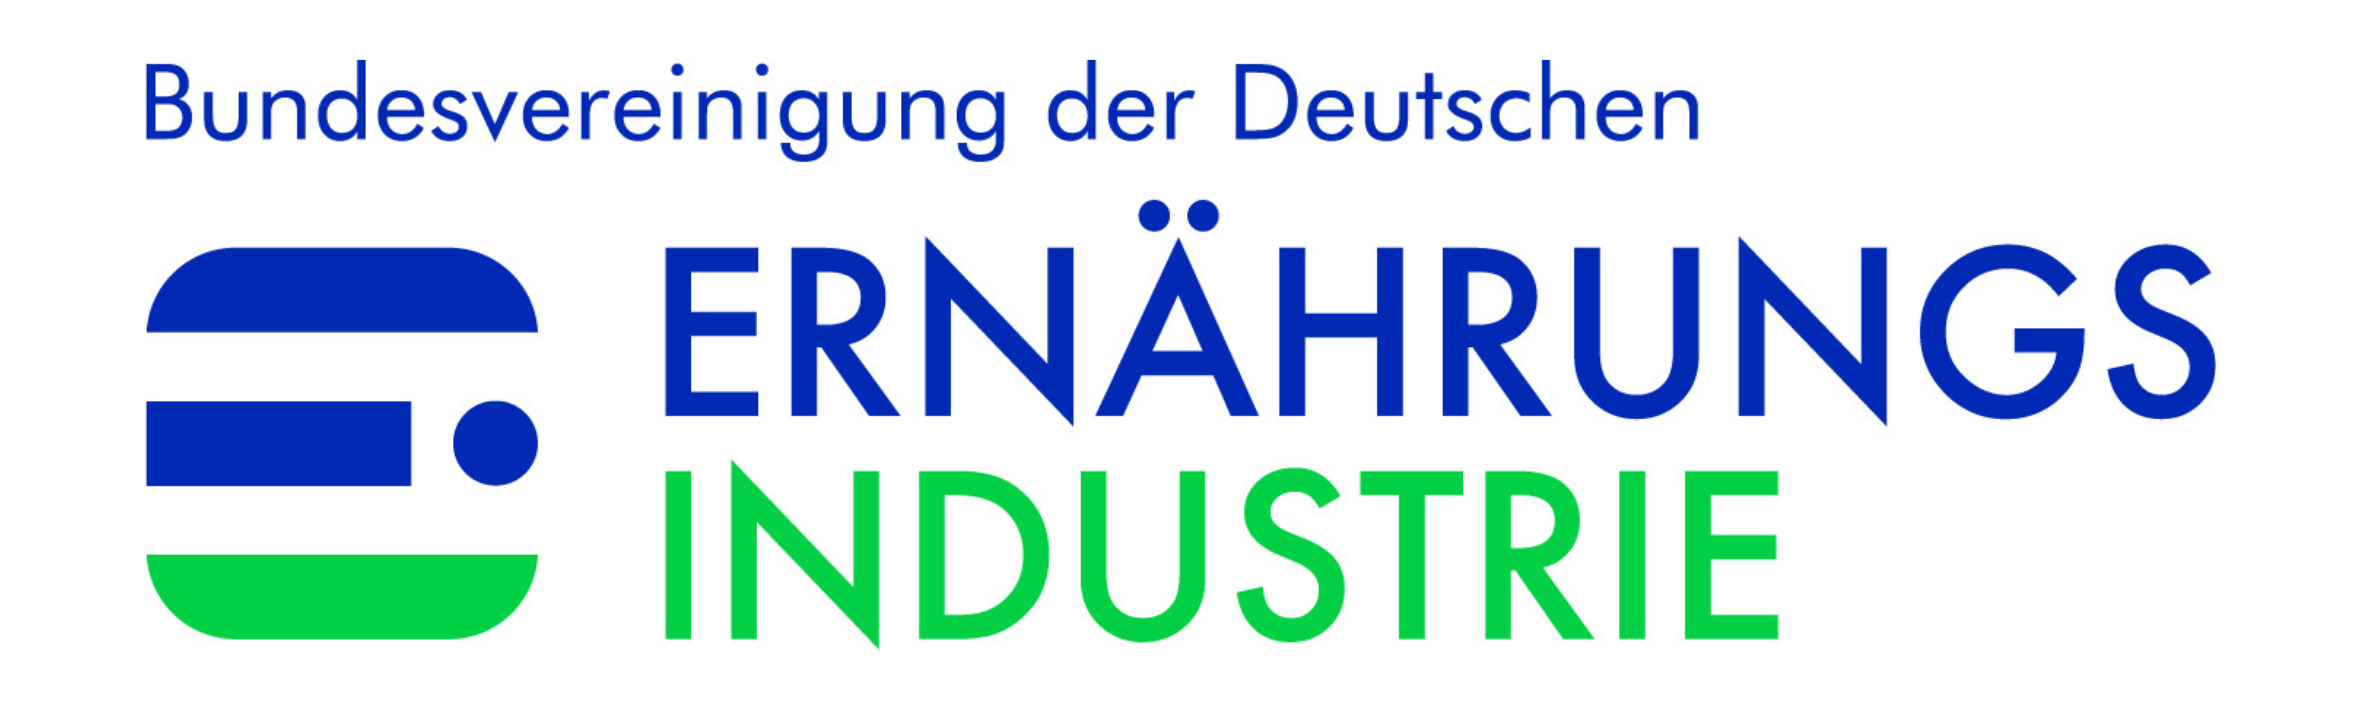 Logo der Bundesvereinigung der Deutschen Ernährungsindustrie.